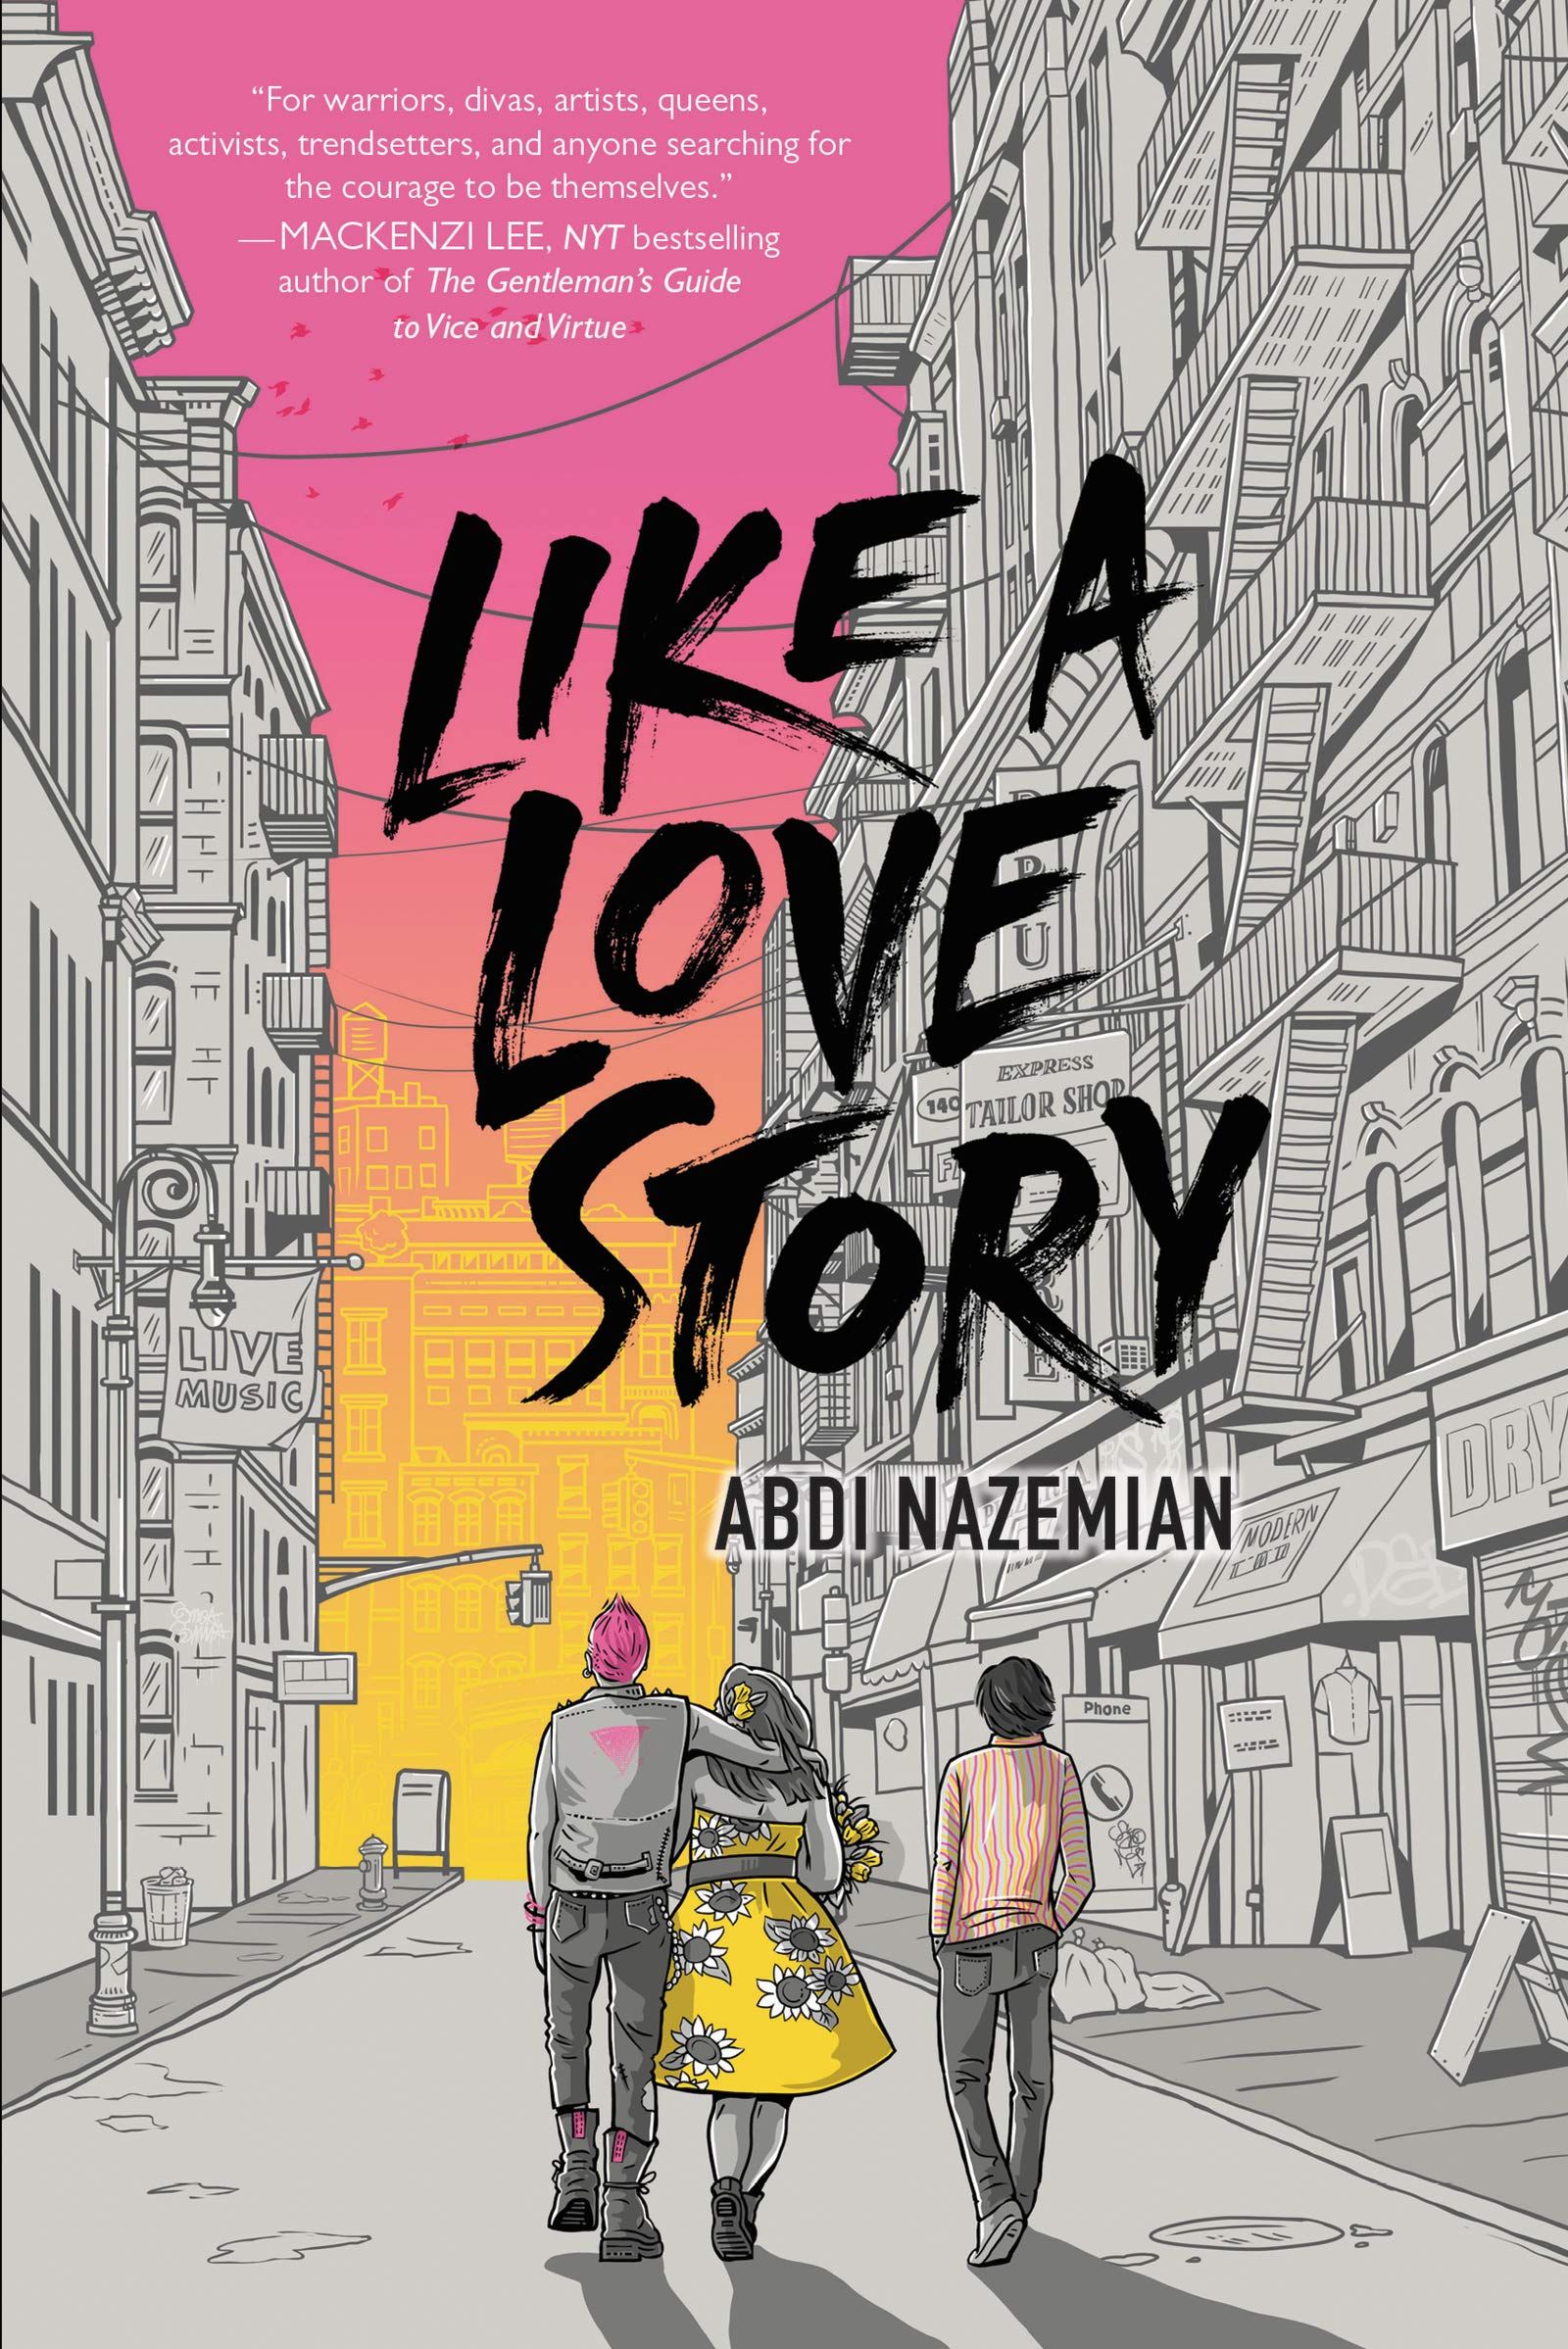 abdi nazemian like a love story